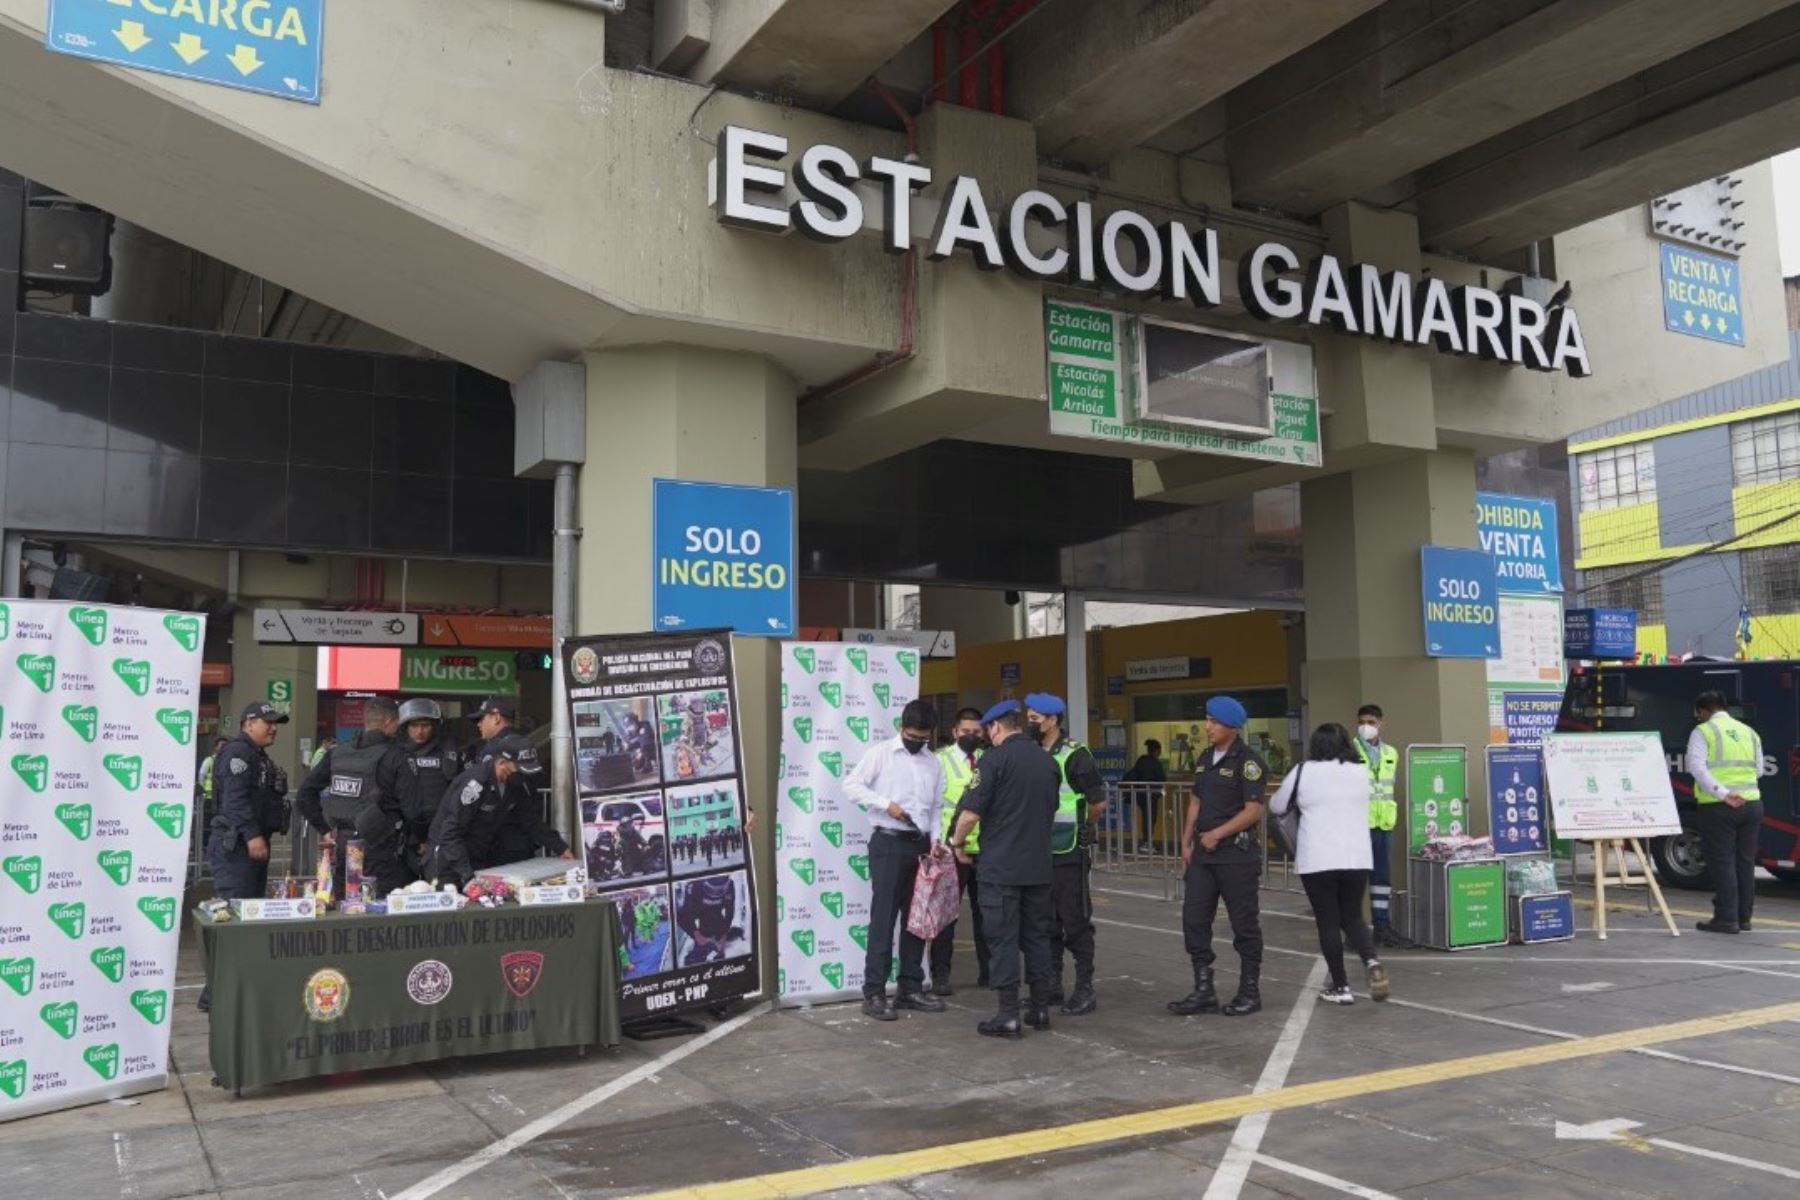 Línea 1 del Metro brinda sugerencias para realizar compras seguras en Gamarra. Fuente: Andina/Difusión